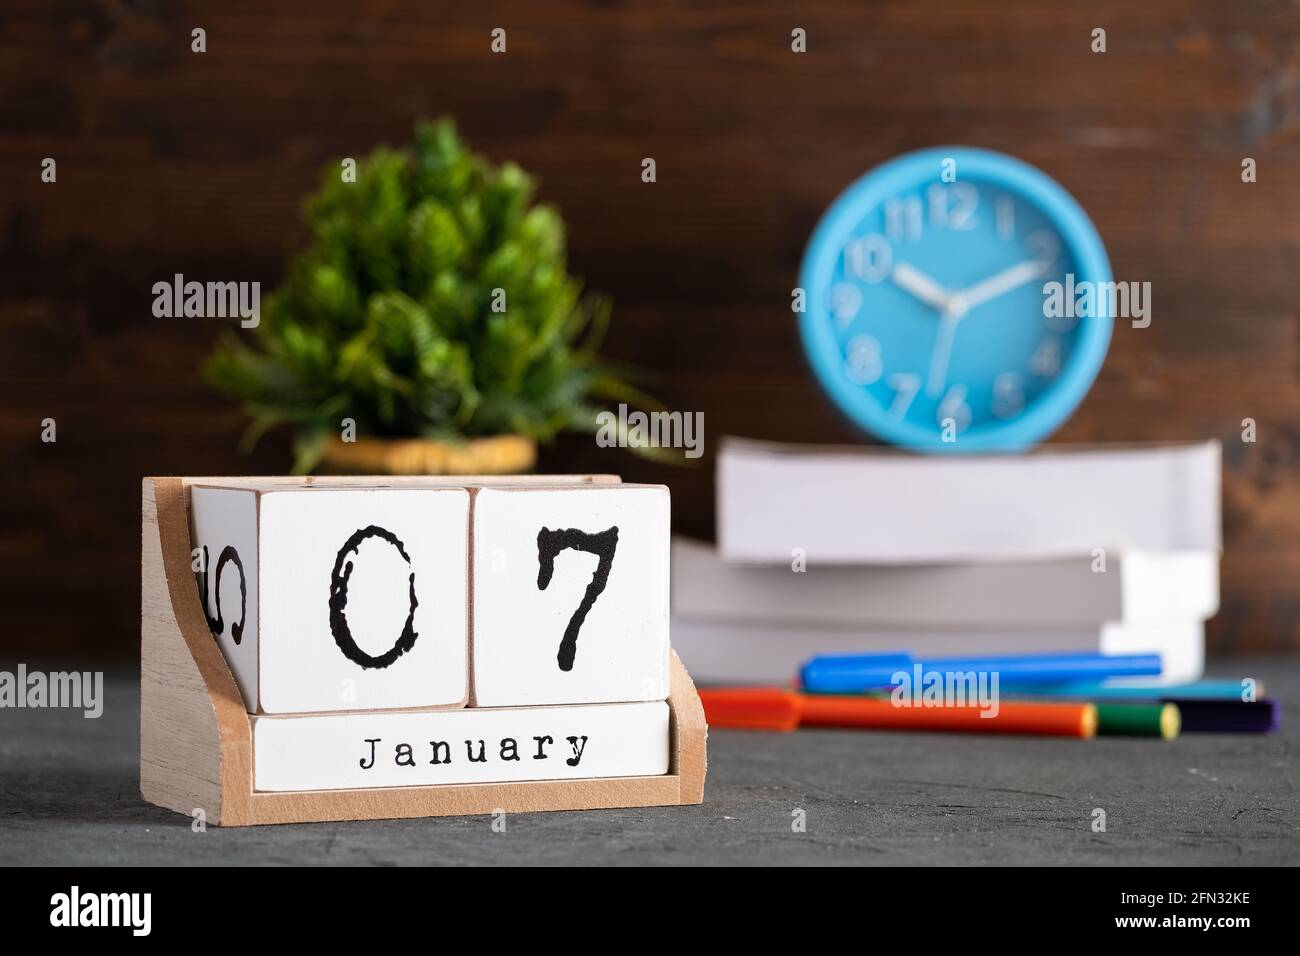 7 janvier. Janvier 07 calendrier cube en bois avec des objets flous sur fond. Banque D'Images